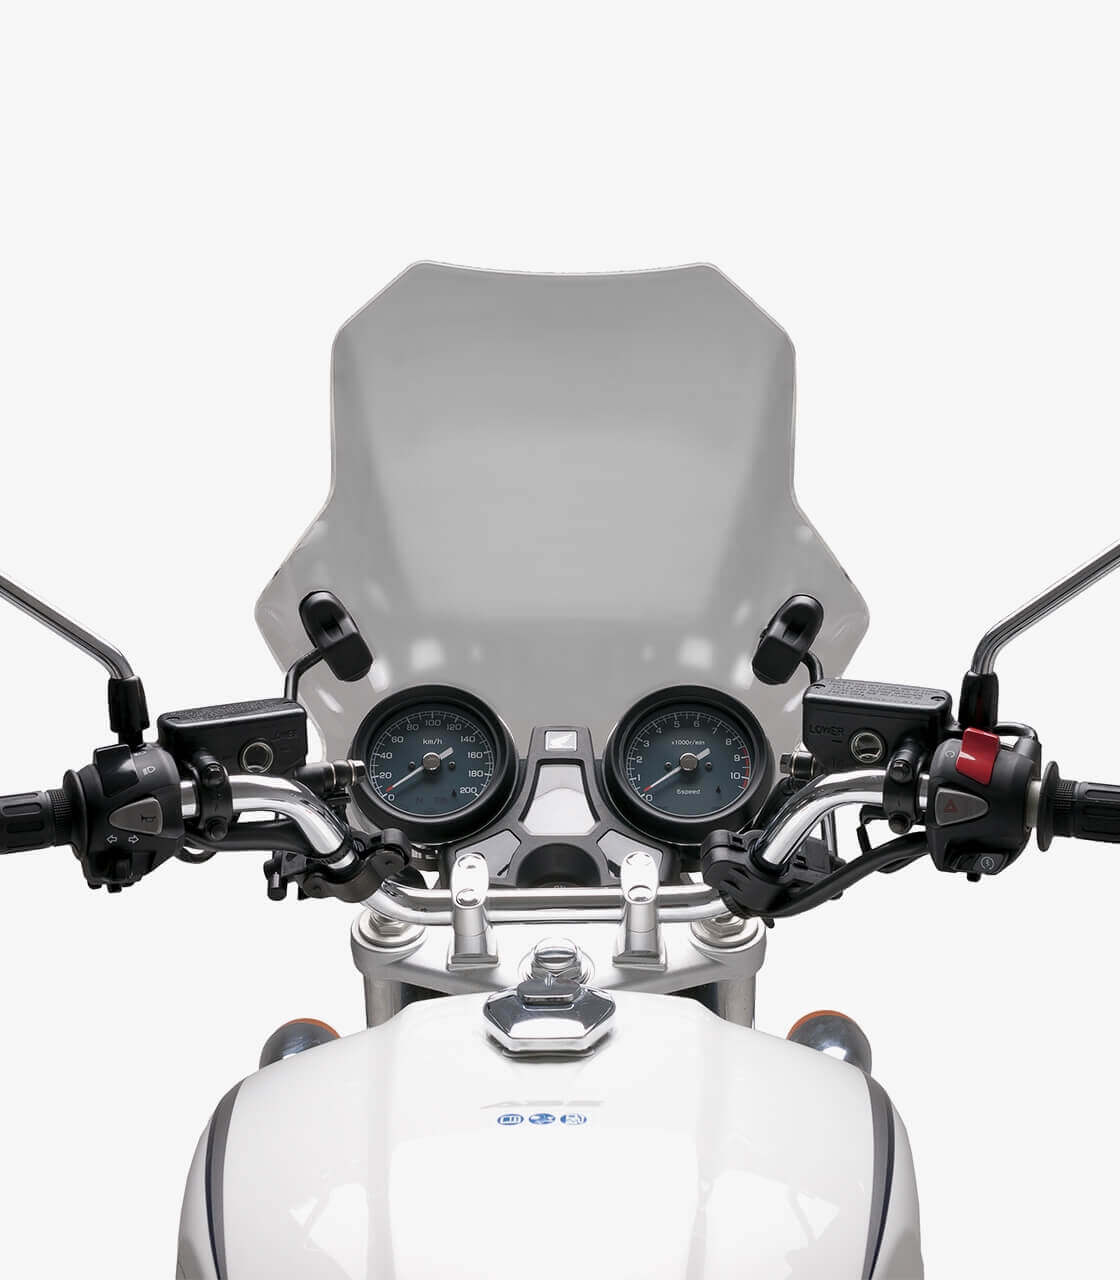 New Motorcycle Windshield Windscreen For Honda Yamaha Suzuki Kawasaki BMW KTM